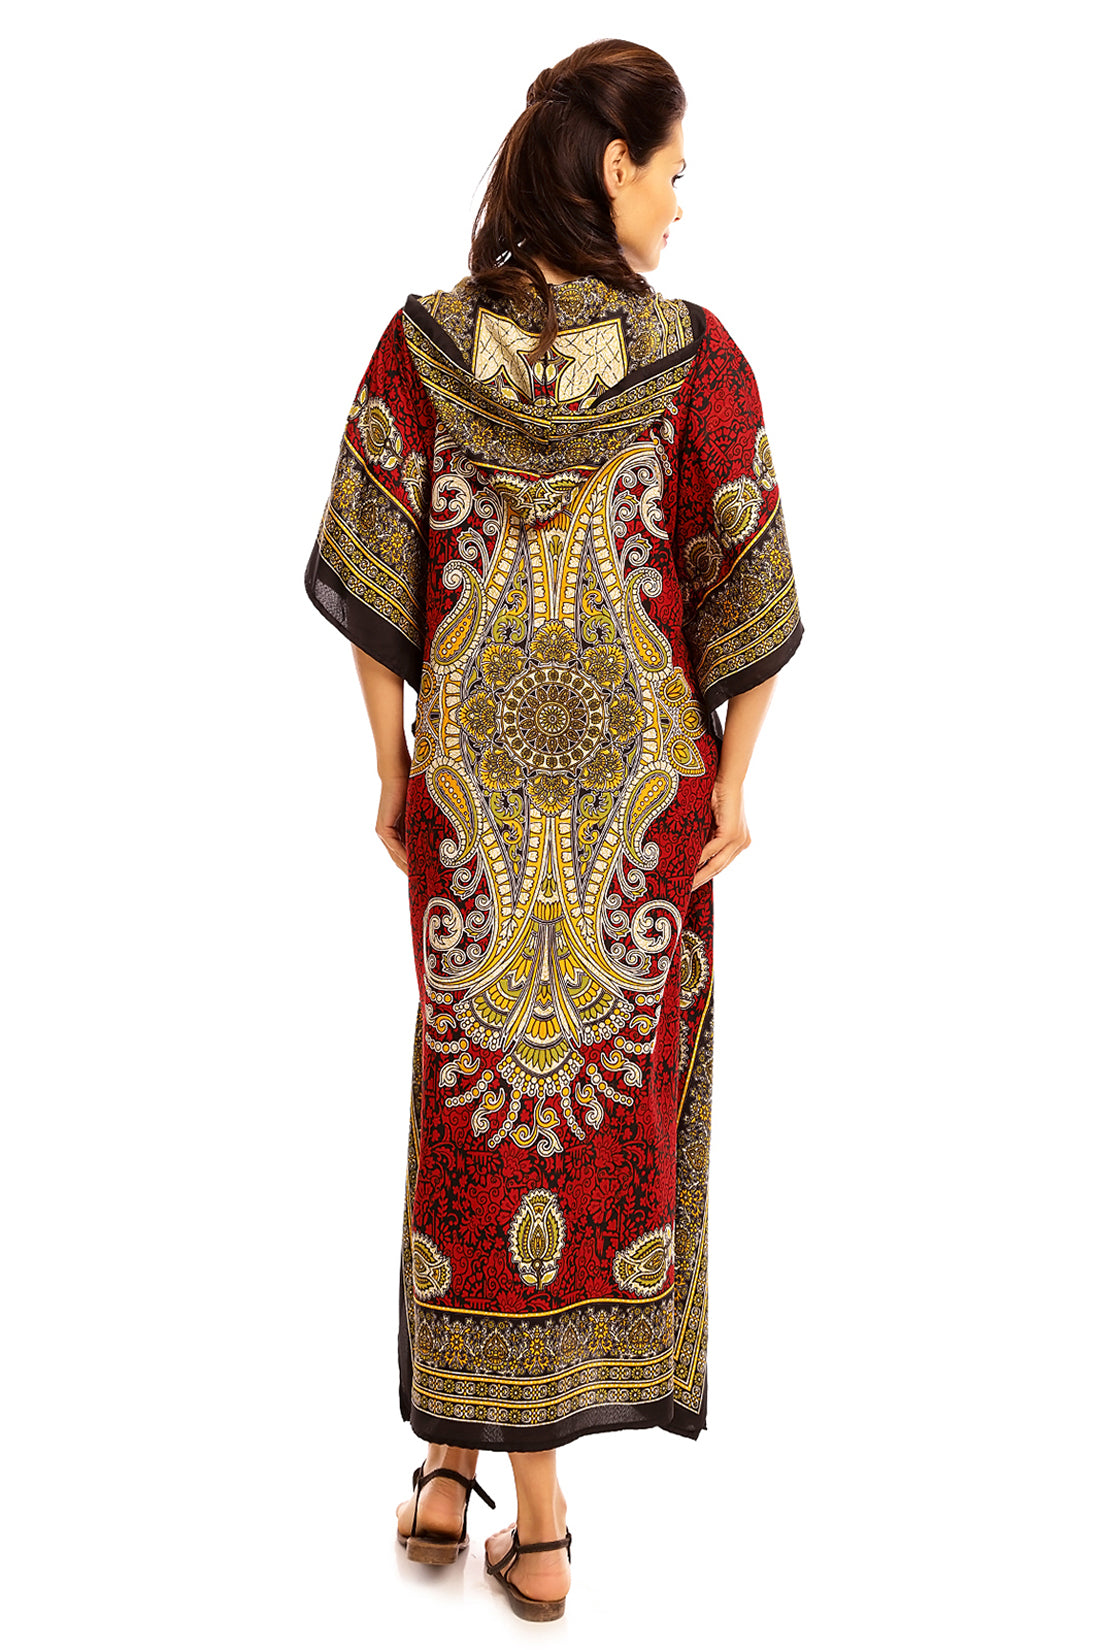 Ladies Hooded Kimono Gown Kaftan in Tribal Print  - Red - Pack of 12